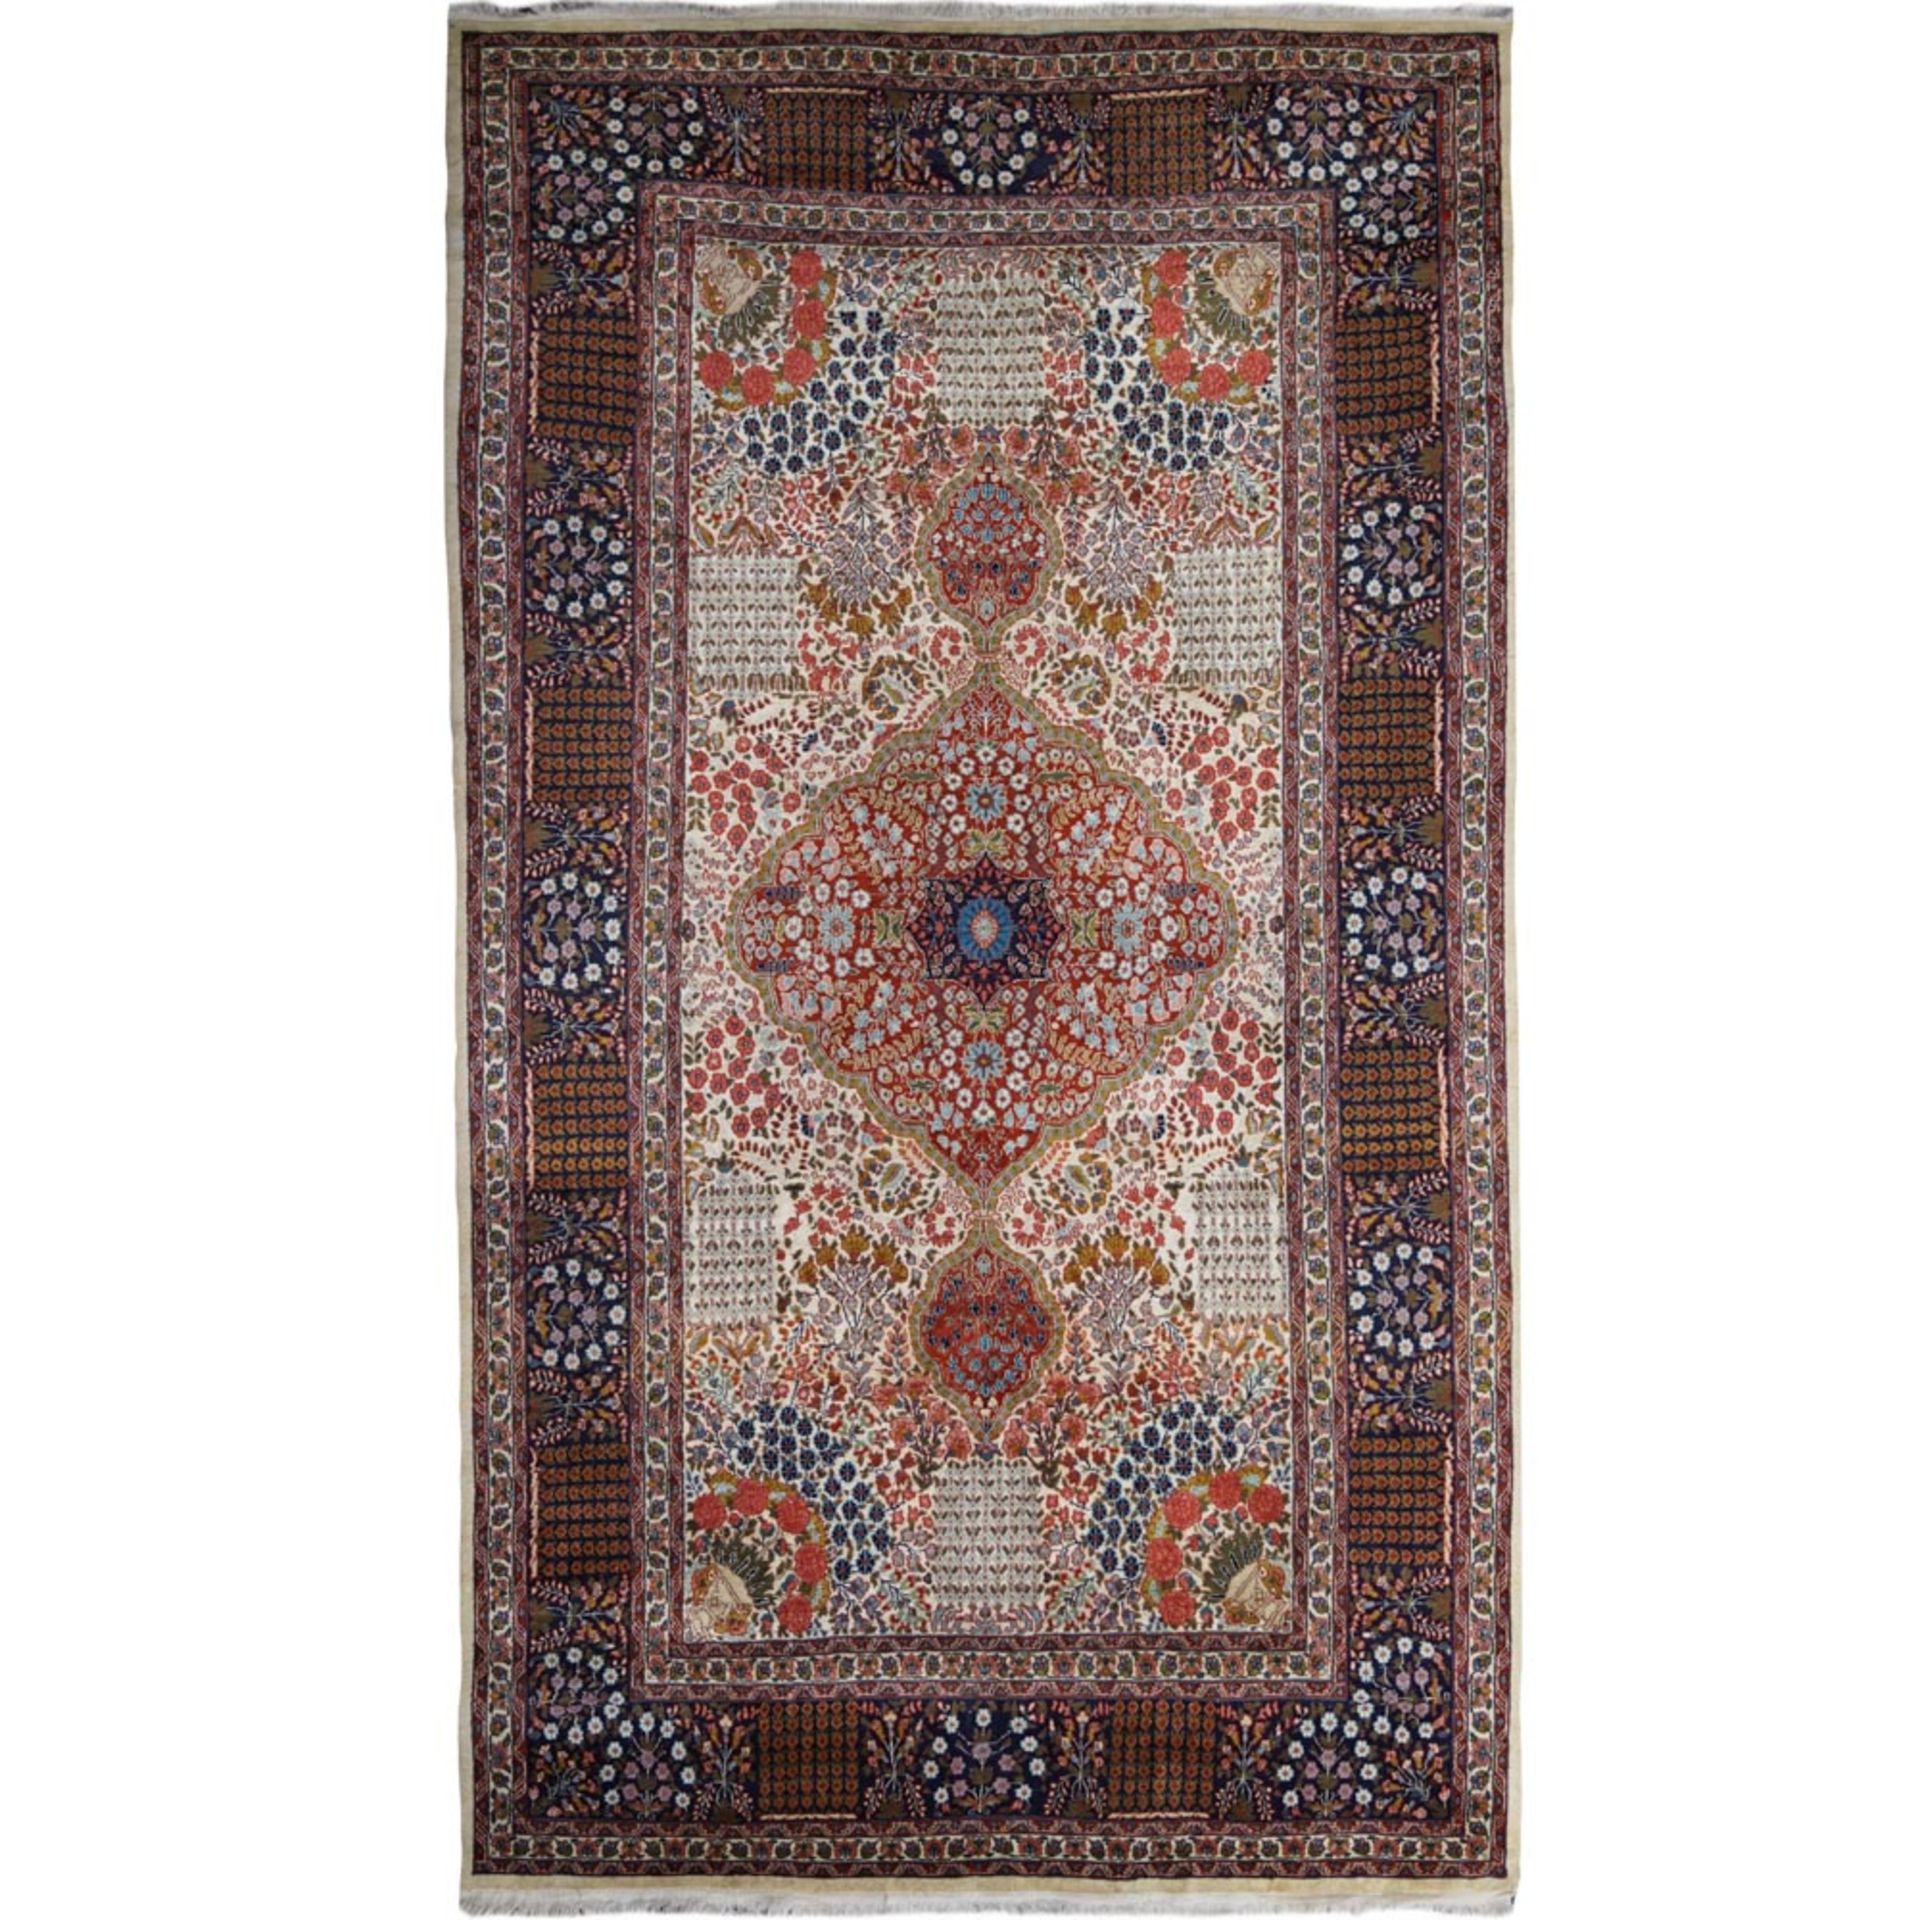 Oriental carpet 20th century 312x185 cm